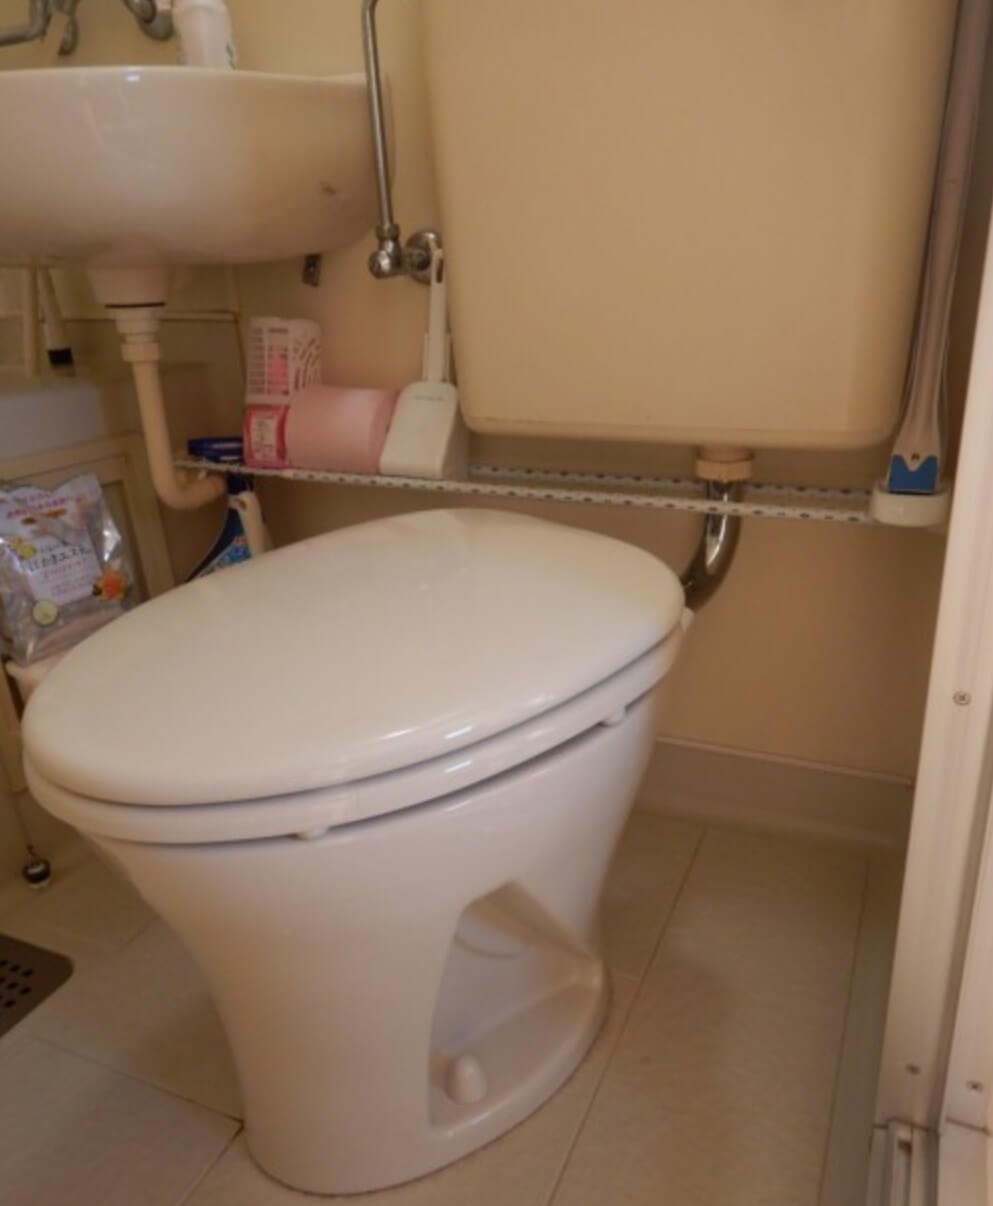 川越市のアパートと賃貸マンションで3点式ユニットバスのトイレ交換 トイレ救急社トイレつまり修理とユニットバスの